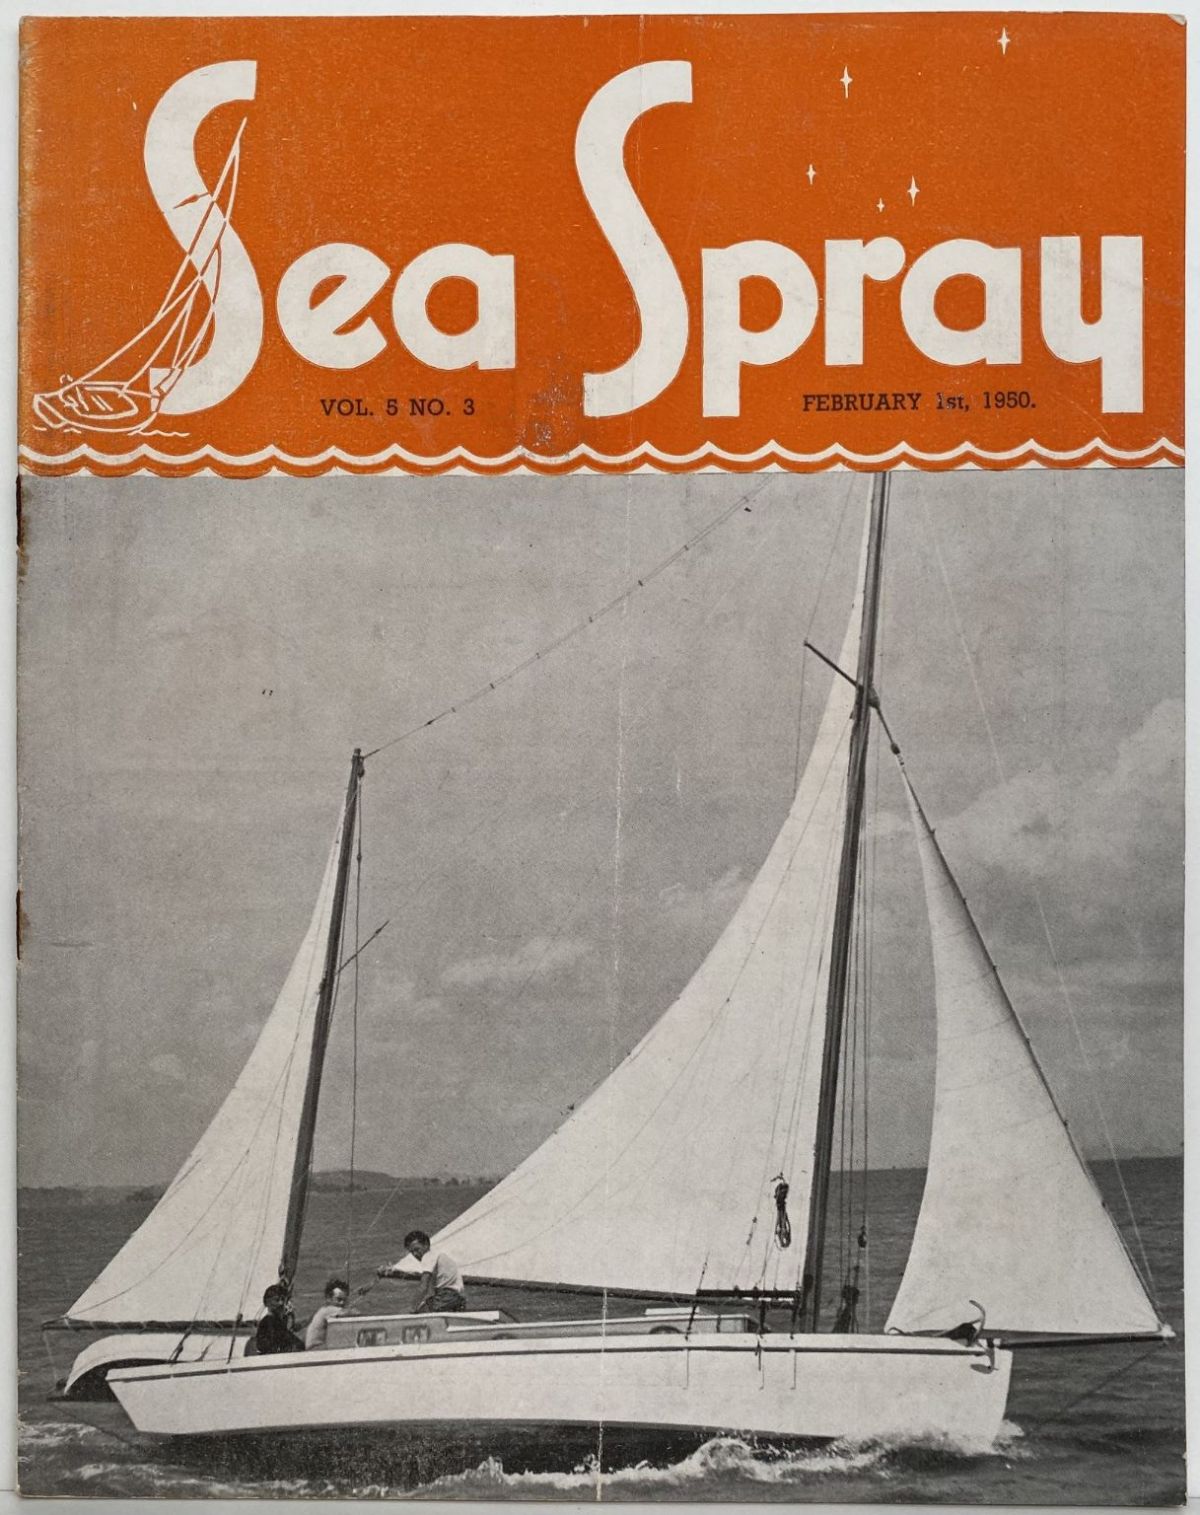 VINTAGE MAGAZINE: Sea Spray - Vol. 5, No. 3 - February 1950